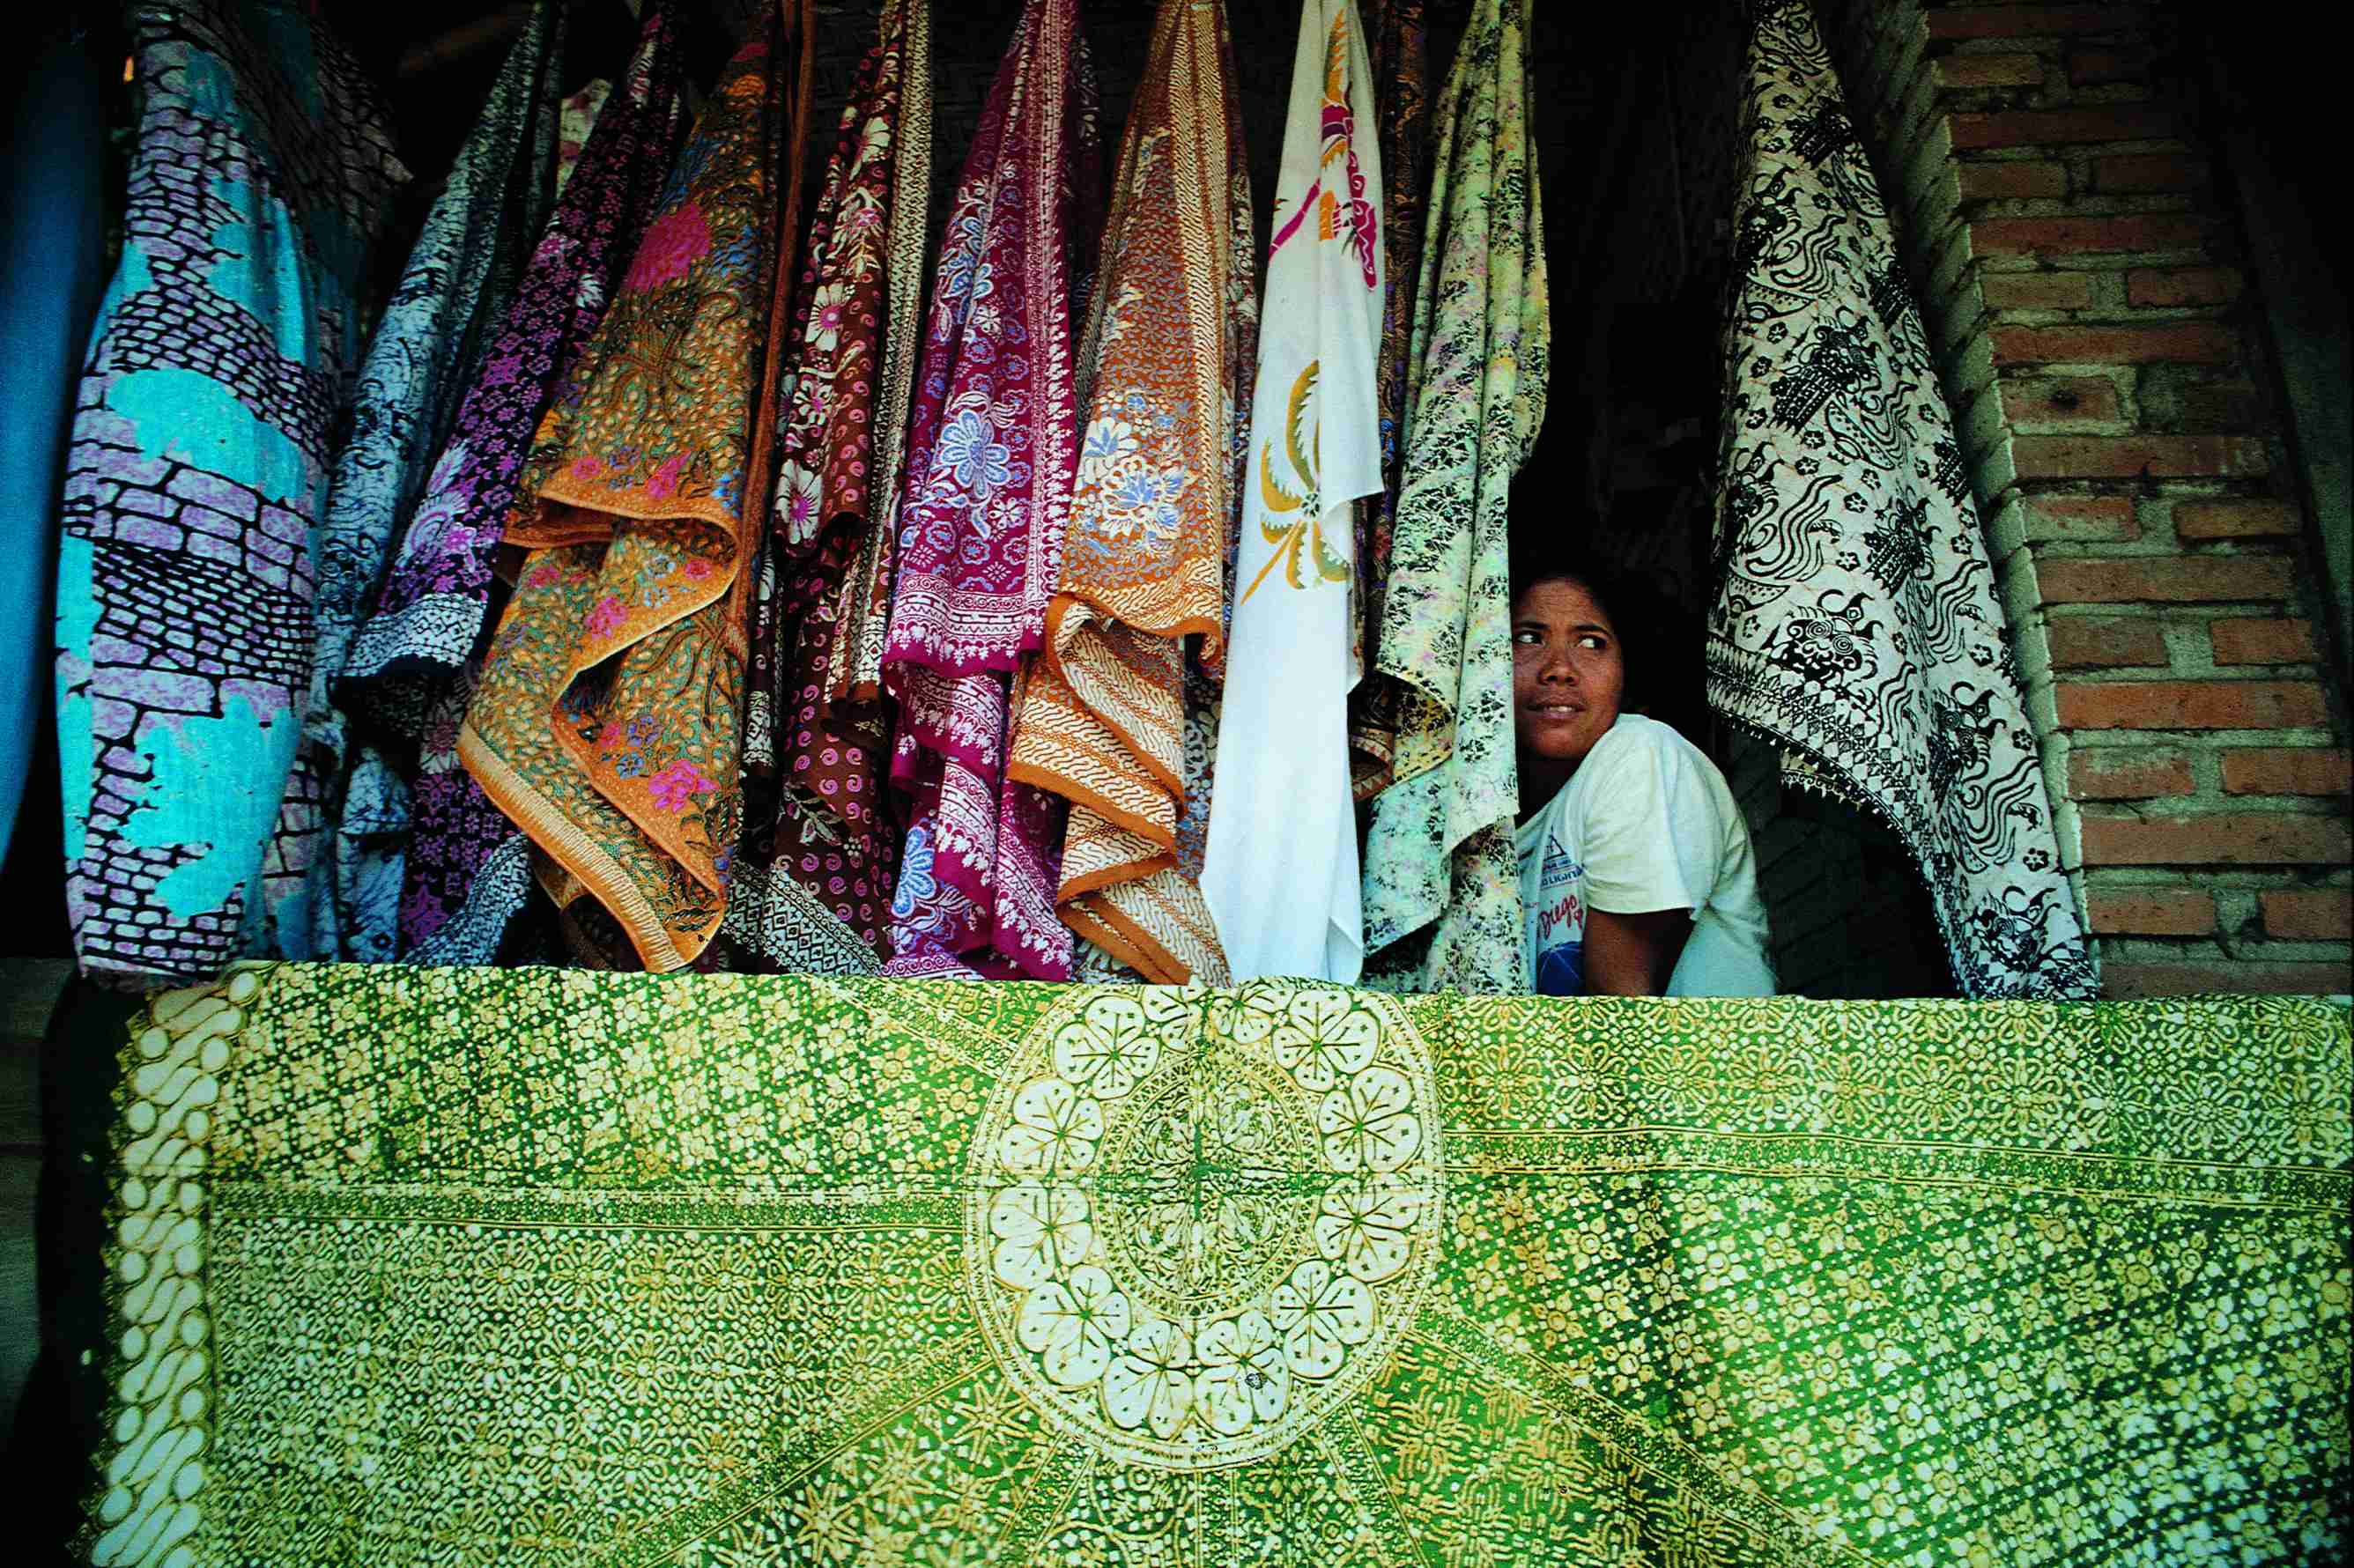 Boutique de tissus batik.